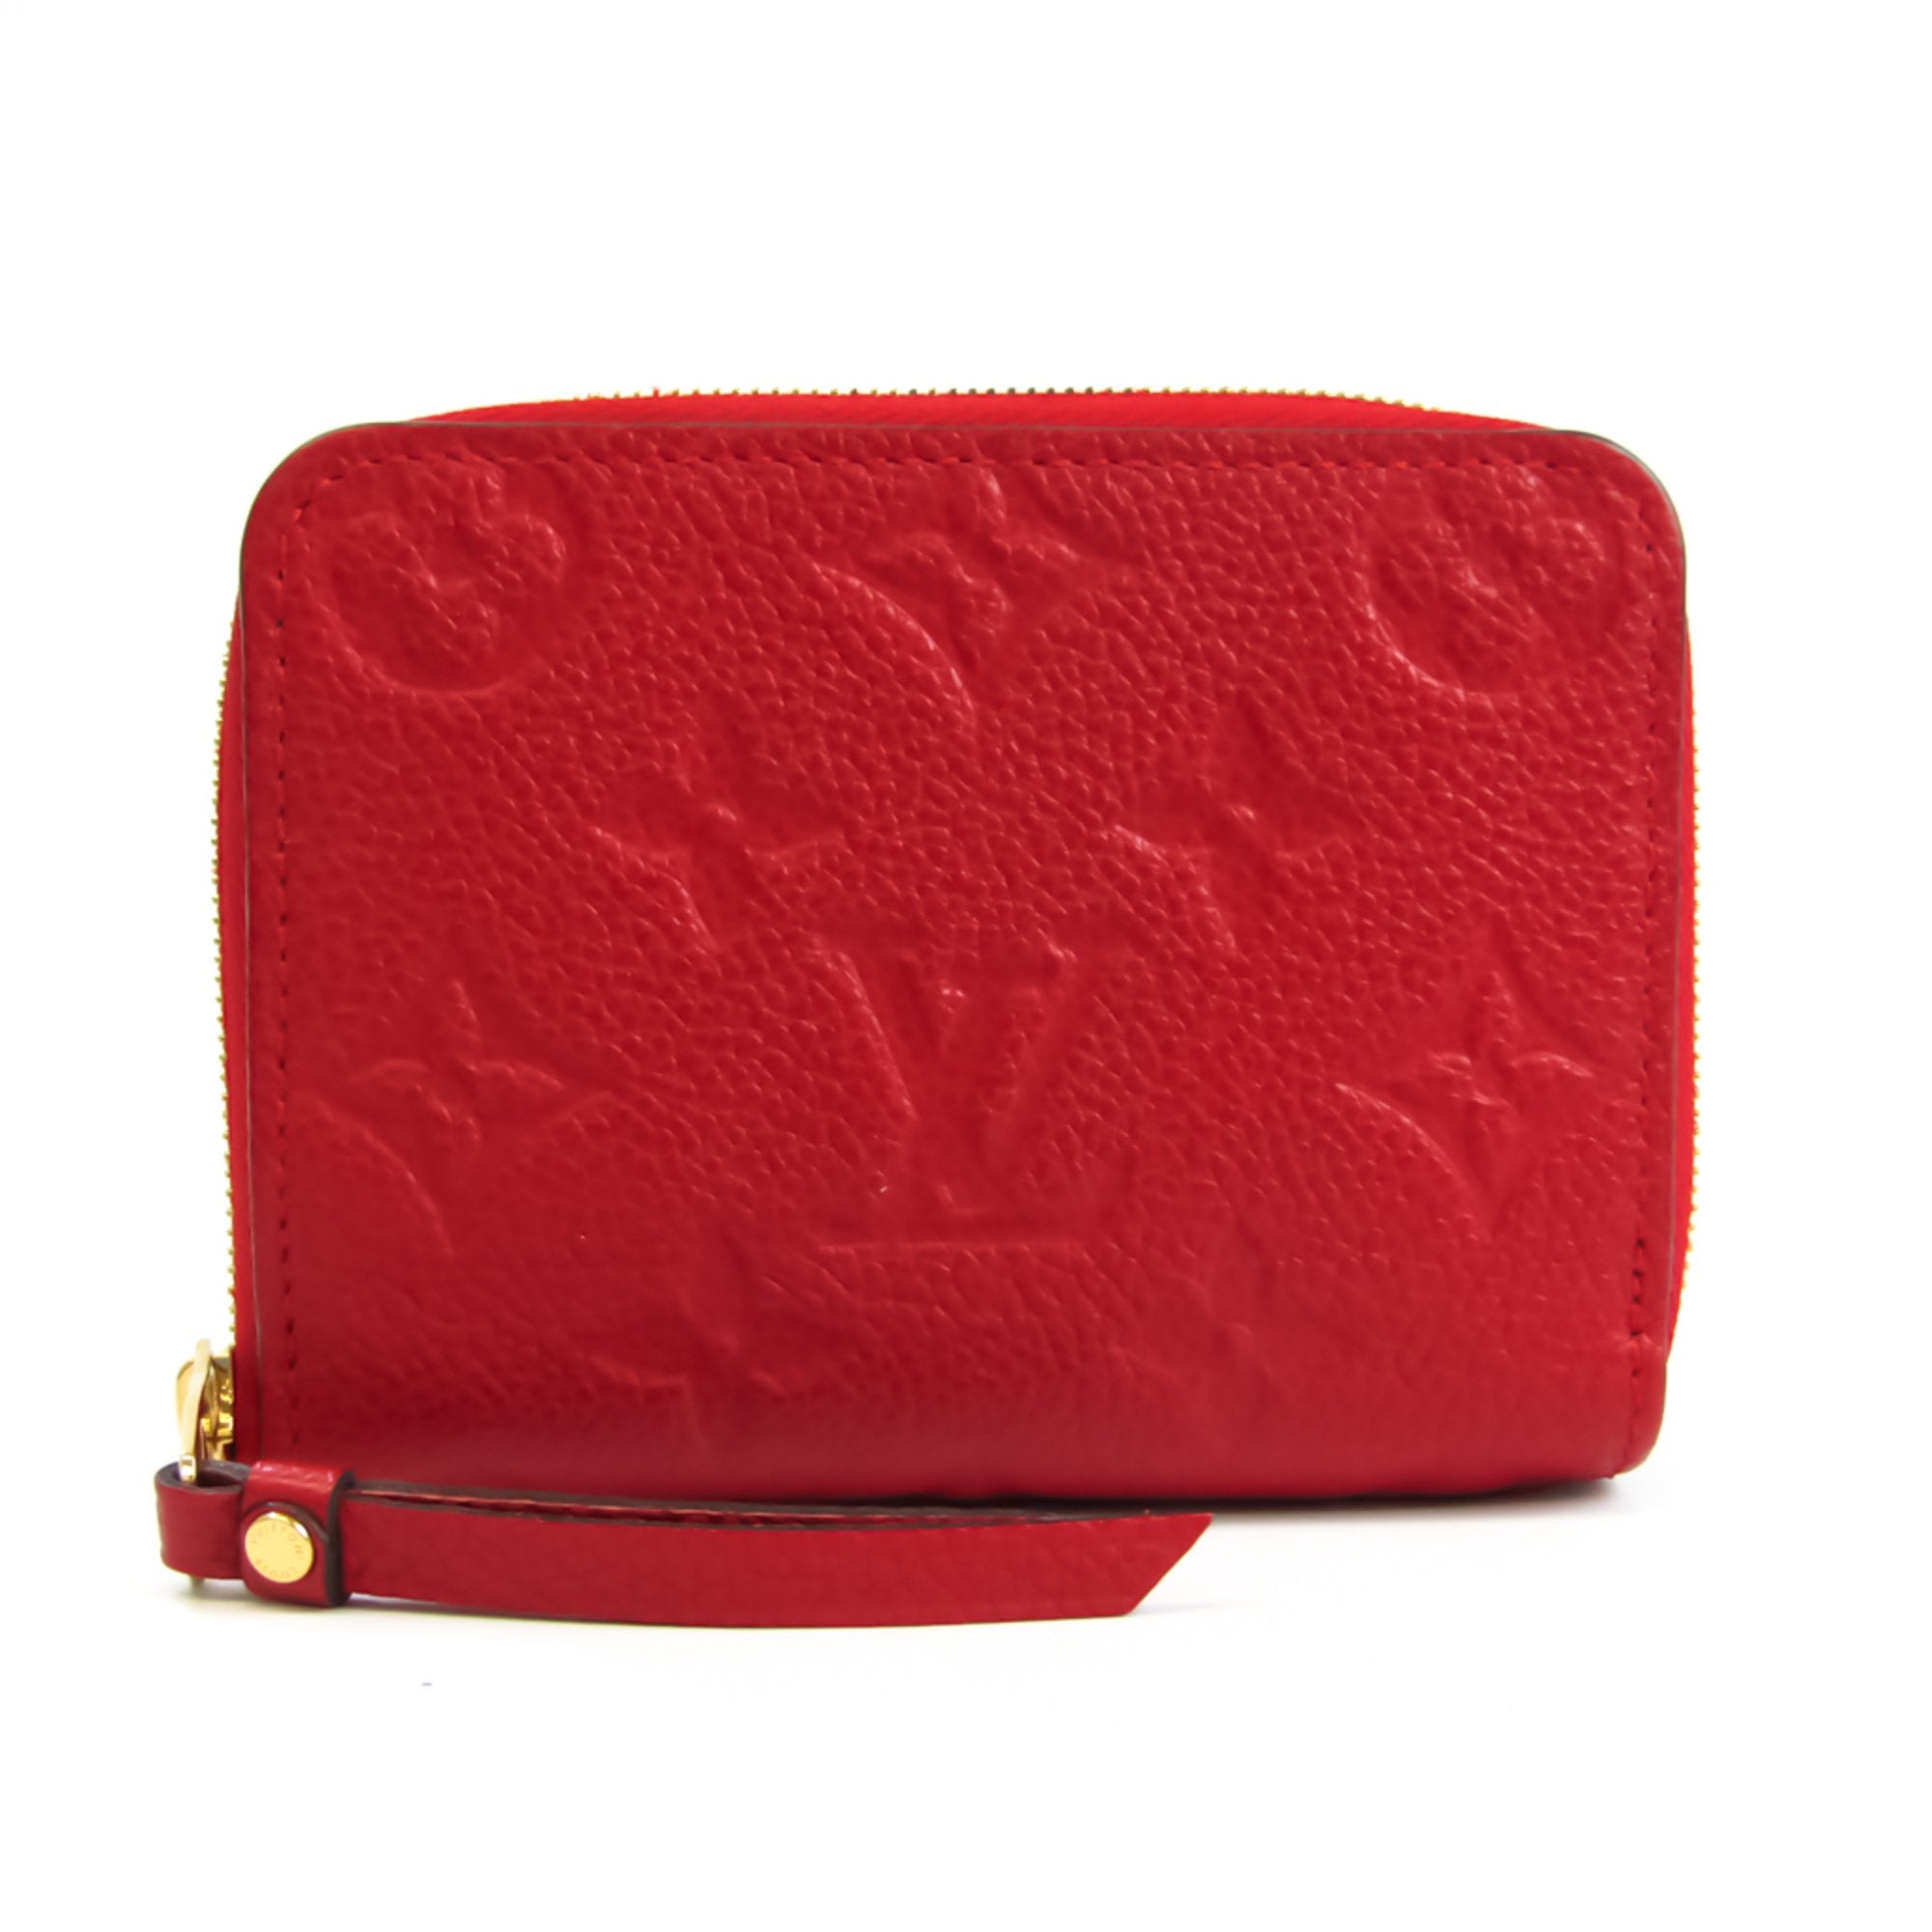 Louis Vuitton Cerise Monogram Empreinte Leather Zippy Wallet